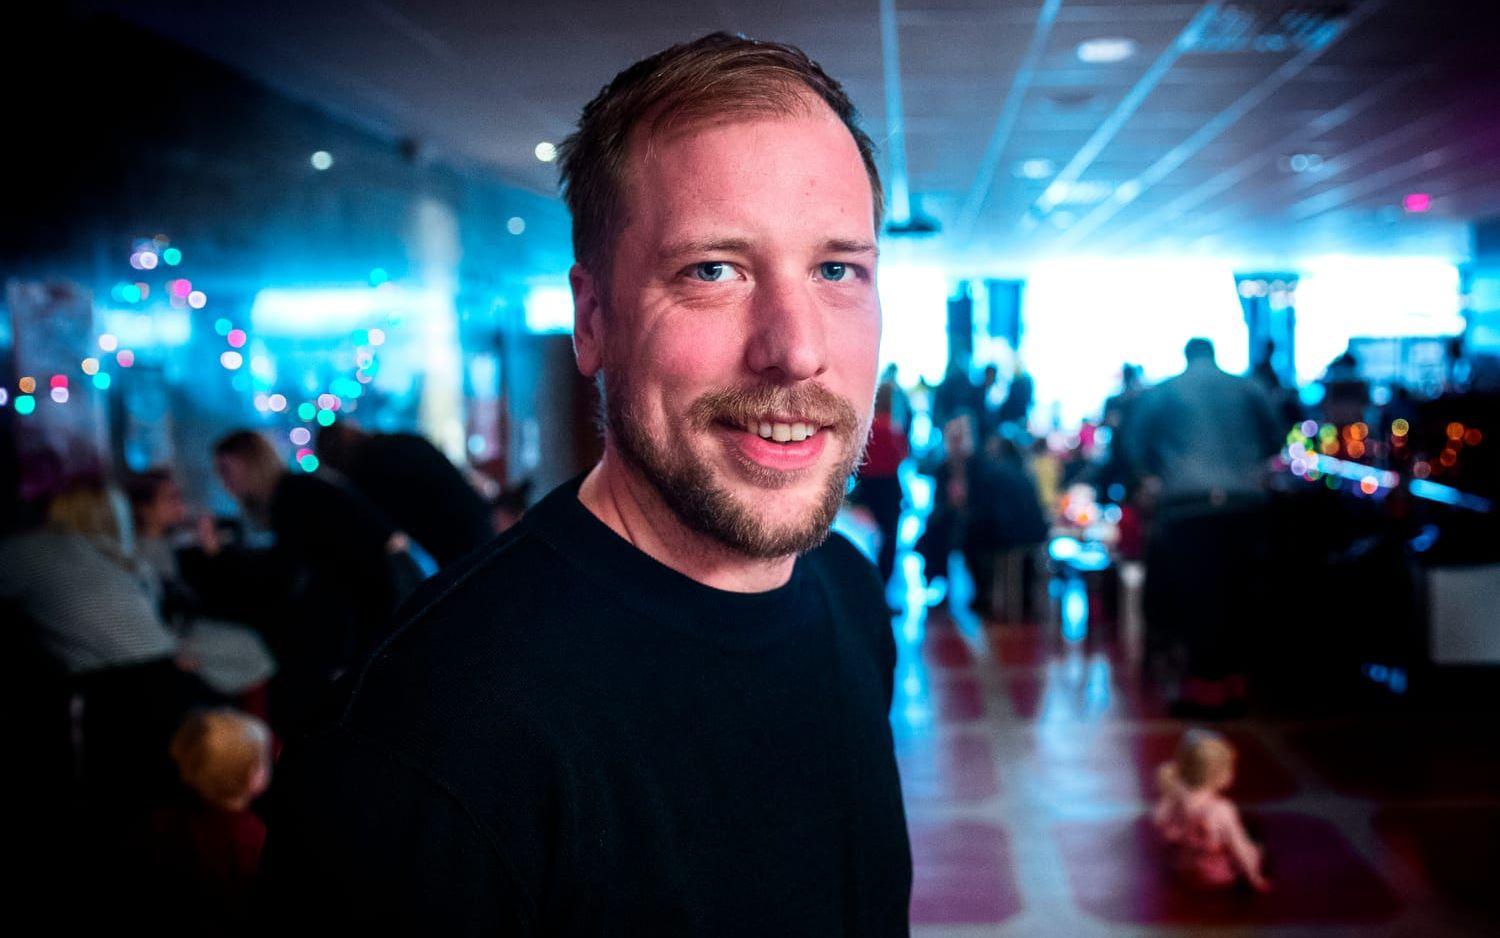 Initiativtagare. Henrik Strahl hade jobbat med Göteborg Film Festival när han 2012 drog igång den första Lilla filmfestivalen. Ombedd att rekommendera tre barnfilmer nämner han: Paddington, Prick och Fläck plus Bamse och tjuvstaden.